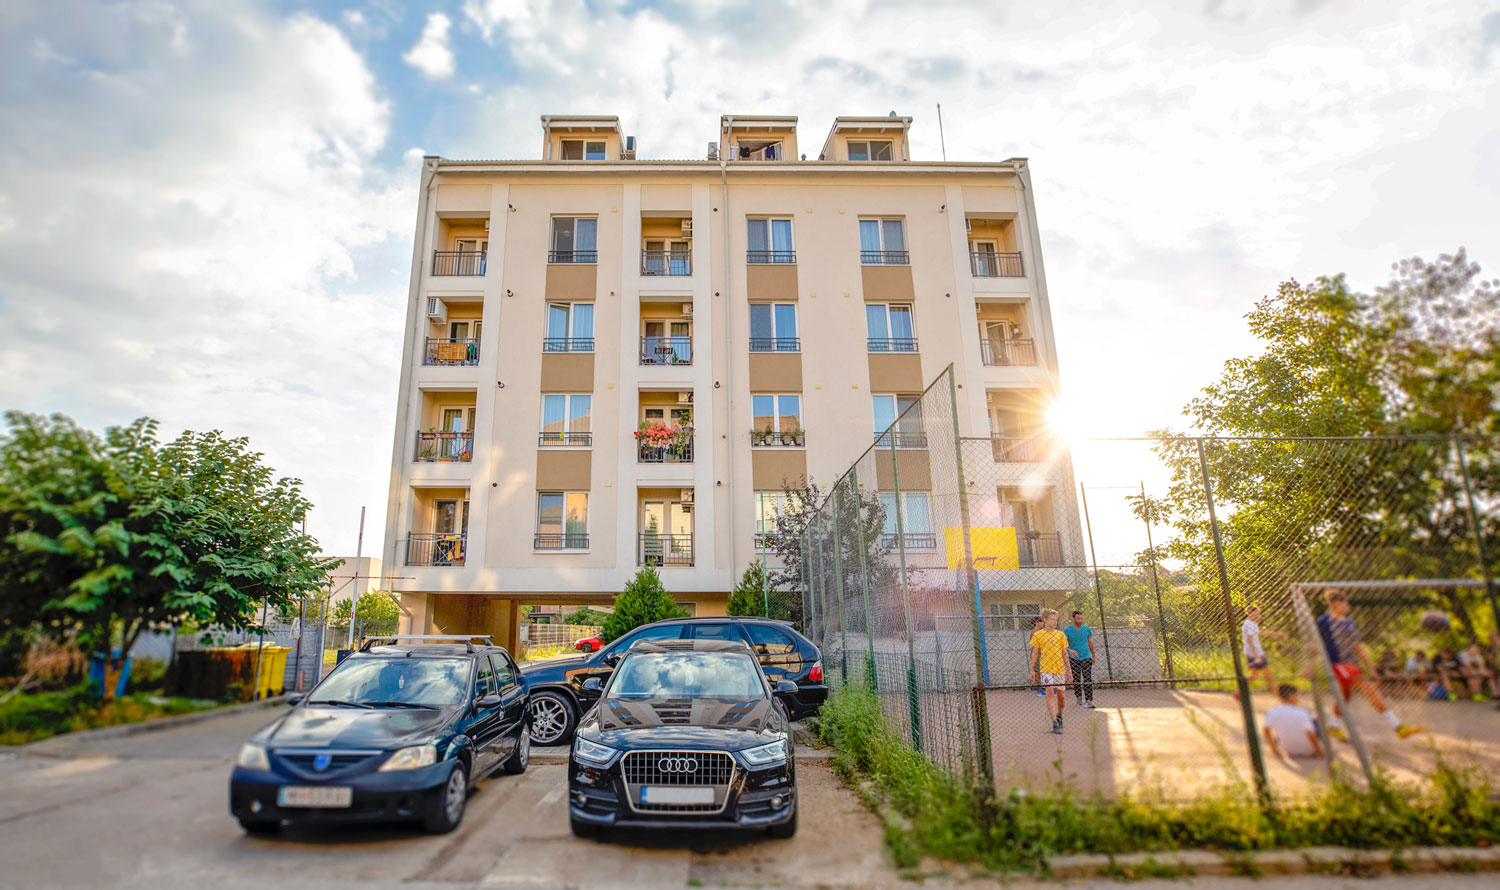 Un proiect sustinut de CANOVA CCM Timisoara, dezvoltator imobiliar cu peste 15 ani experienta in Timisoara.